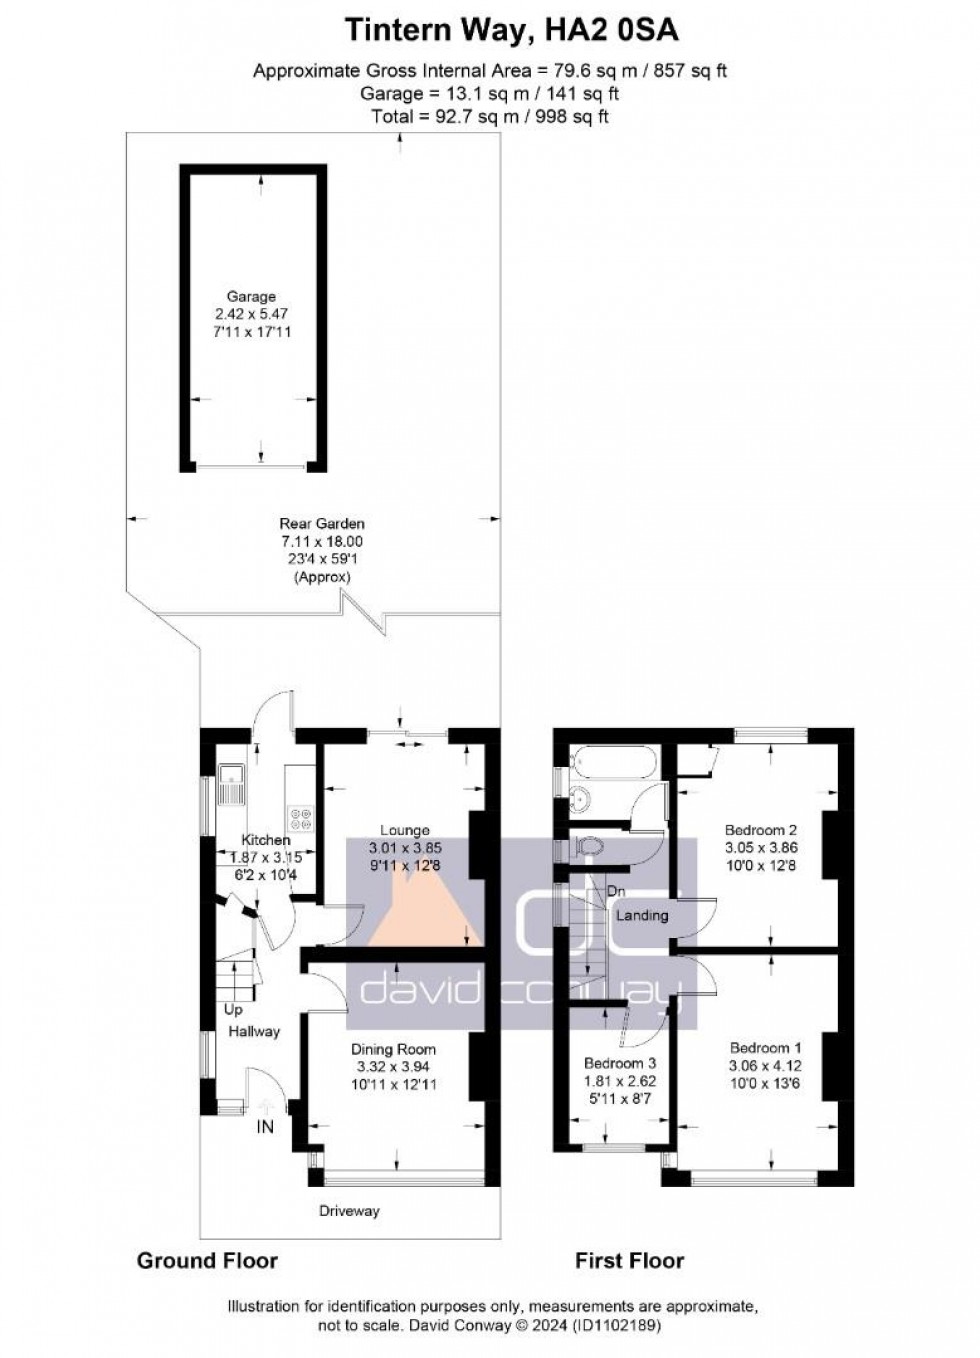 Floorplan for Tintern Way, Harrow, HA2 0SA